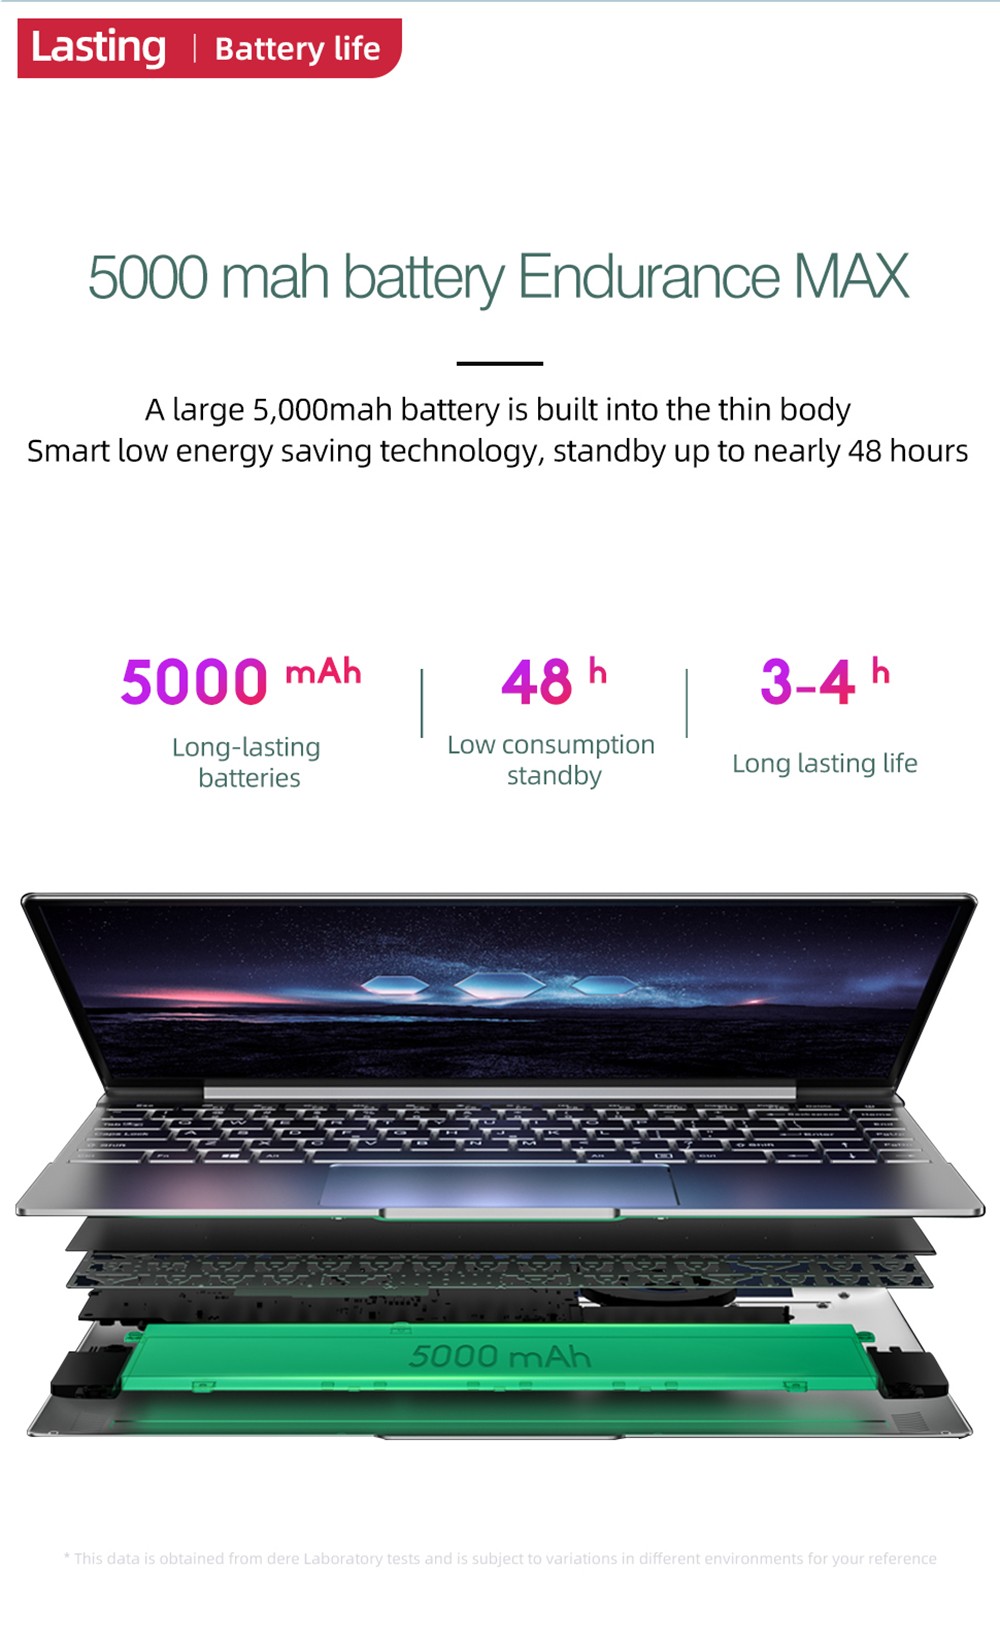 Daysky V14S 14.1 inch Laptop Intel Celeron N5095 12GB LPDDR4 256G SSD 1080P FHD with Backlight Windows 10 - Silver